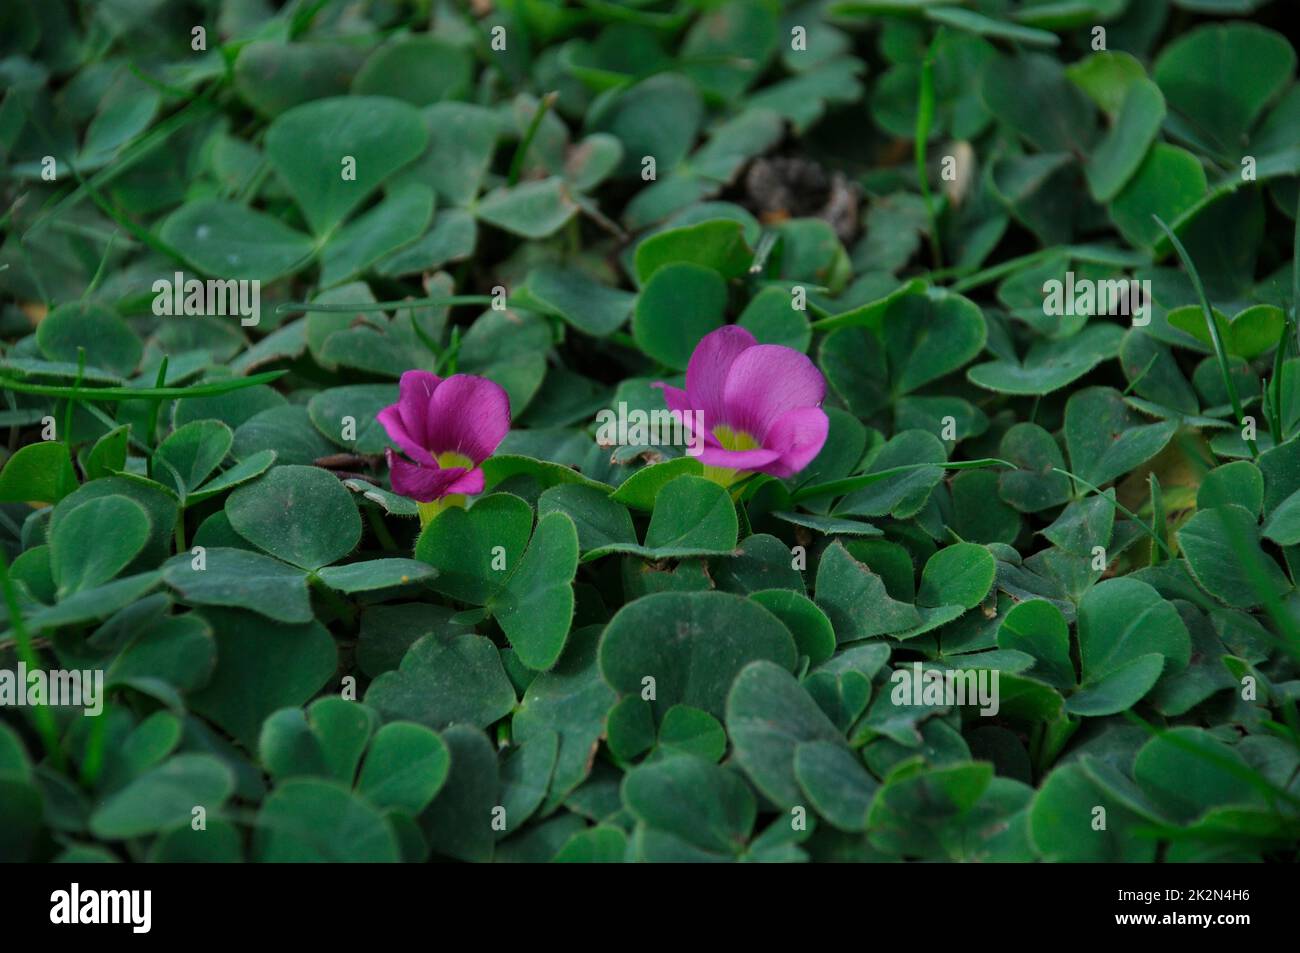 Oxalis purpurea on a lawn in Porto Stock Photo